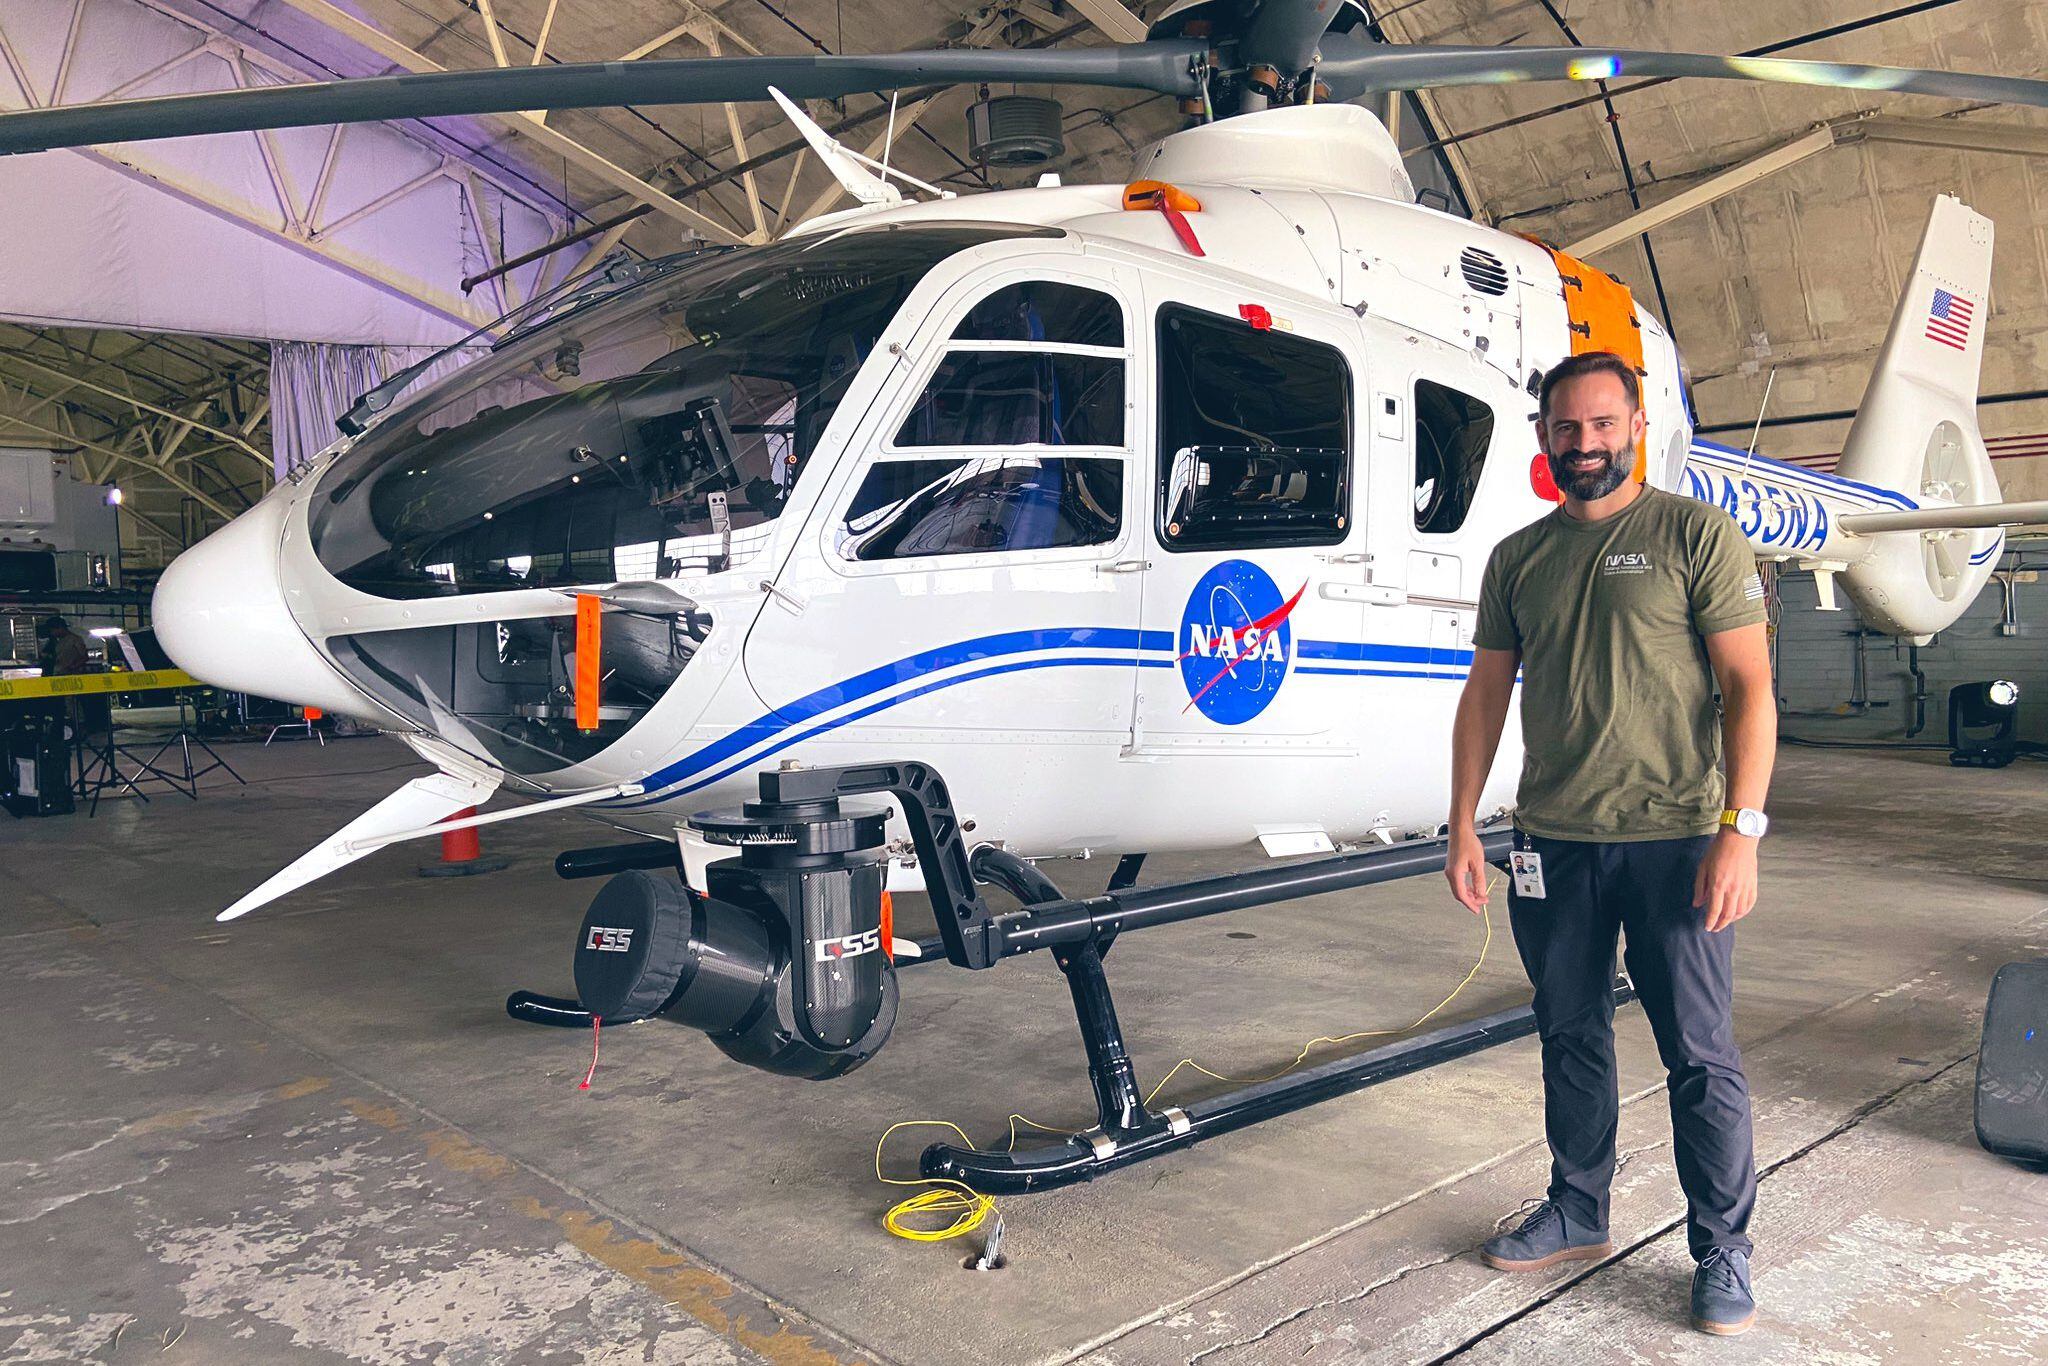 El científico planetario argentino Lucas Paganini aparece junto al helicóptero que trabajó en la recuperación de la cápsula de la misión OSIRIS-REx. (EFE/Lucas Paganini)
